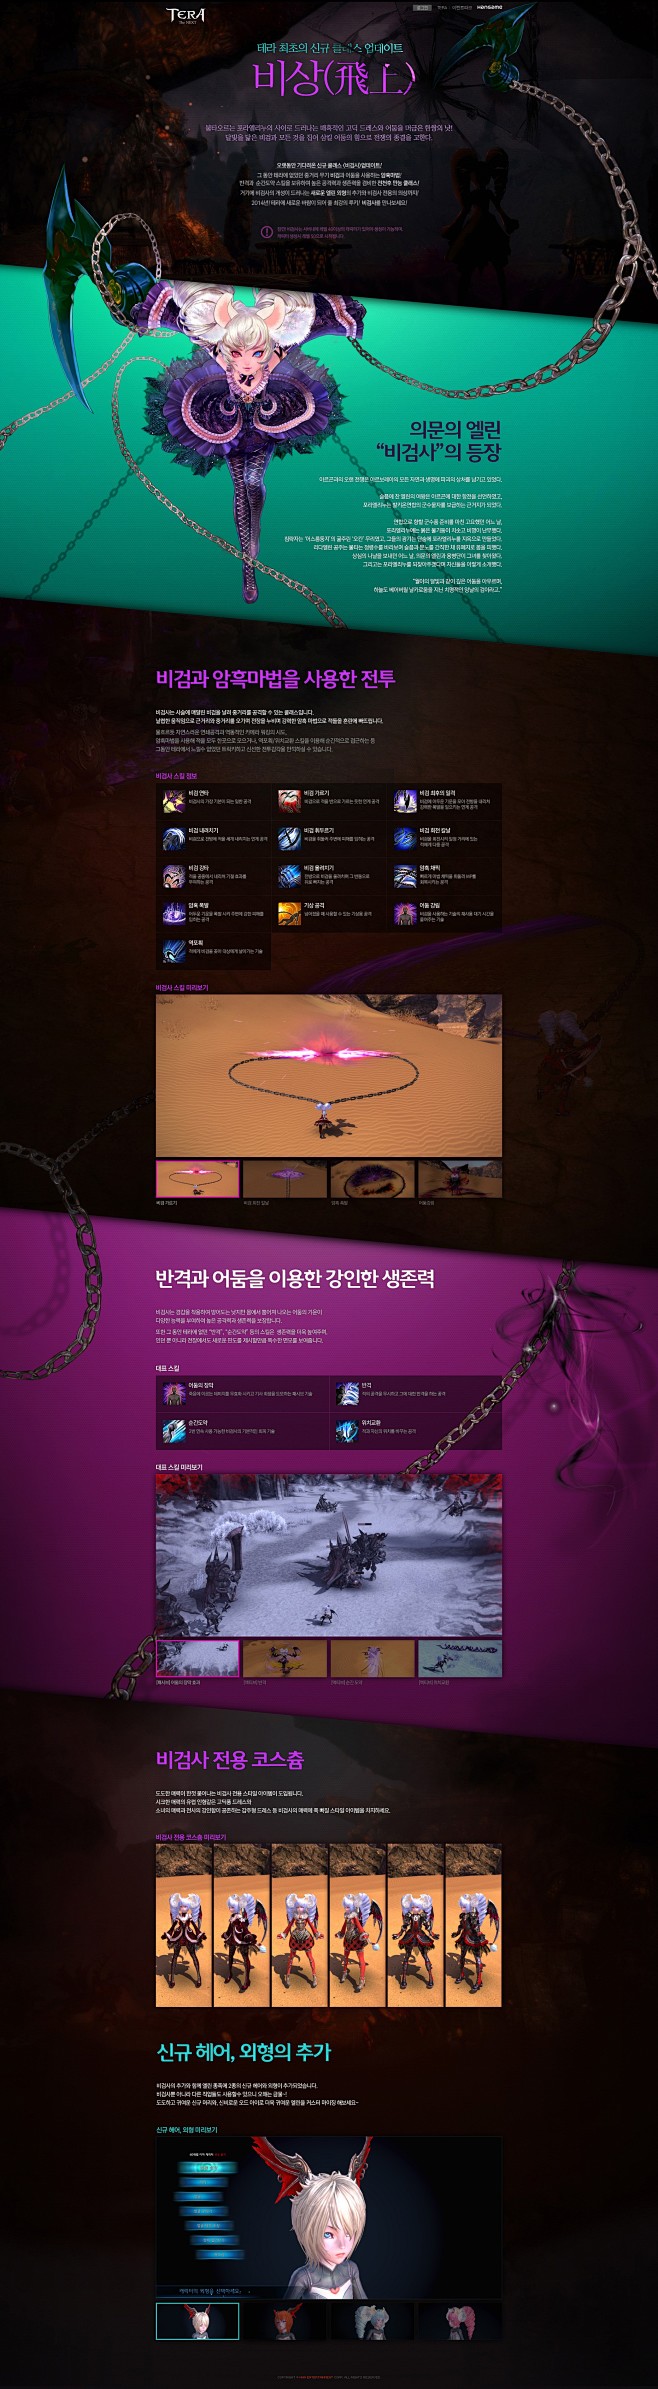 韩国专题活动页面设计